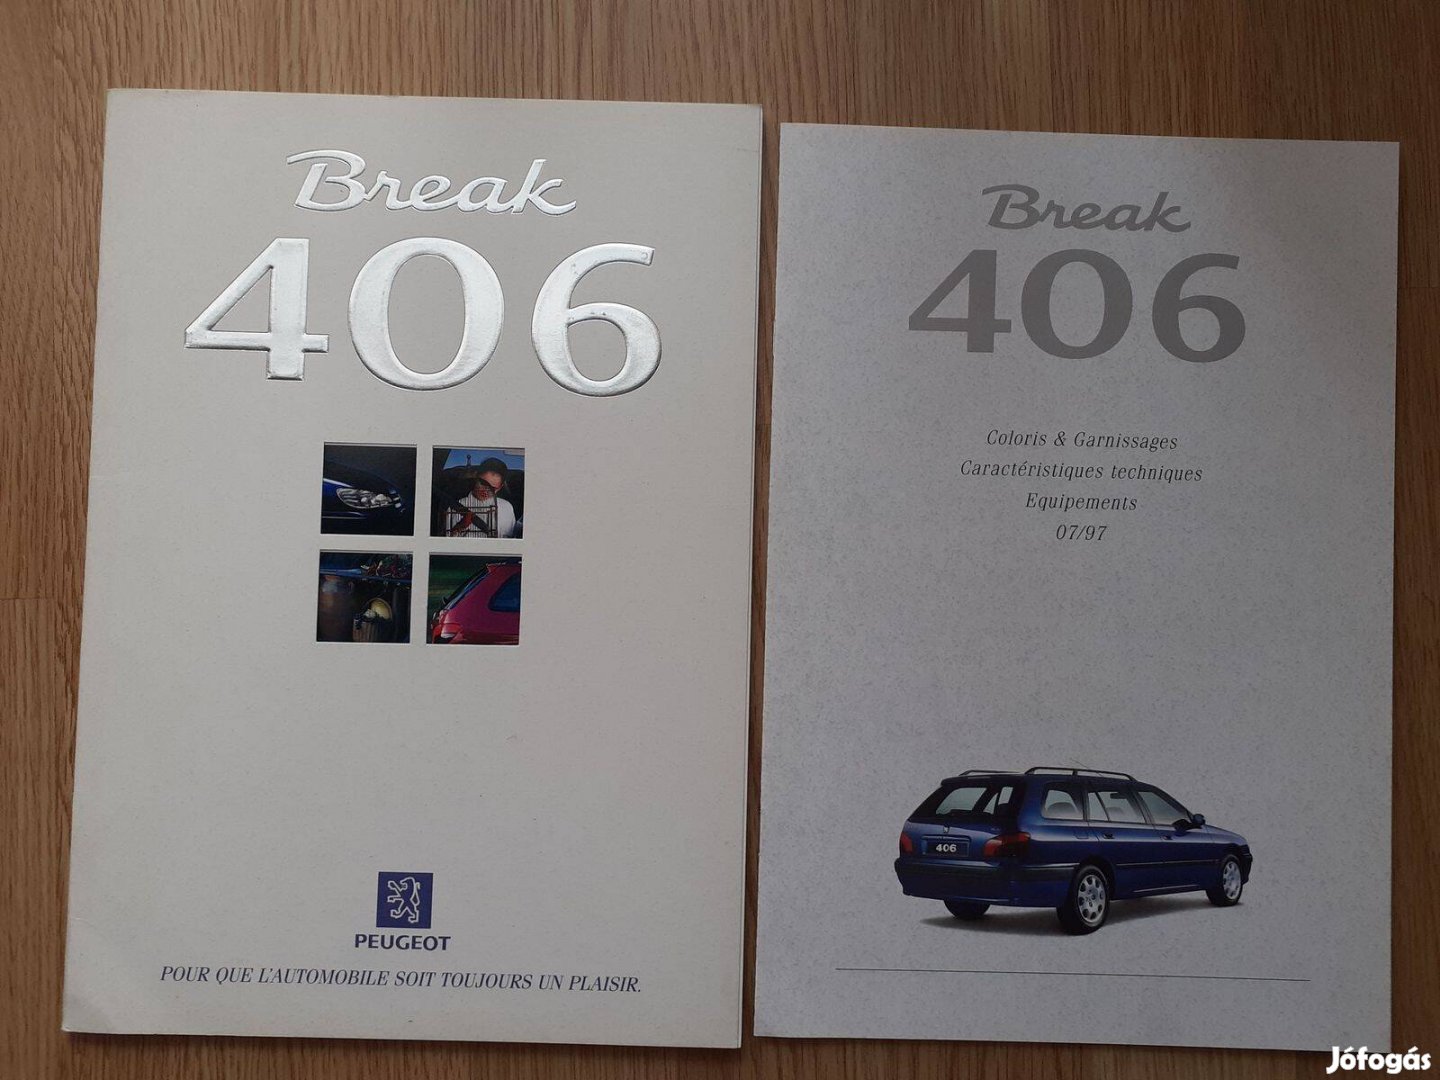 Peugeot 406 Break prospektus + műszaki adat - 1997, francia nyelvű